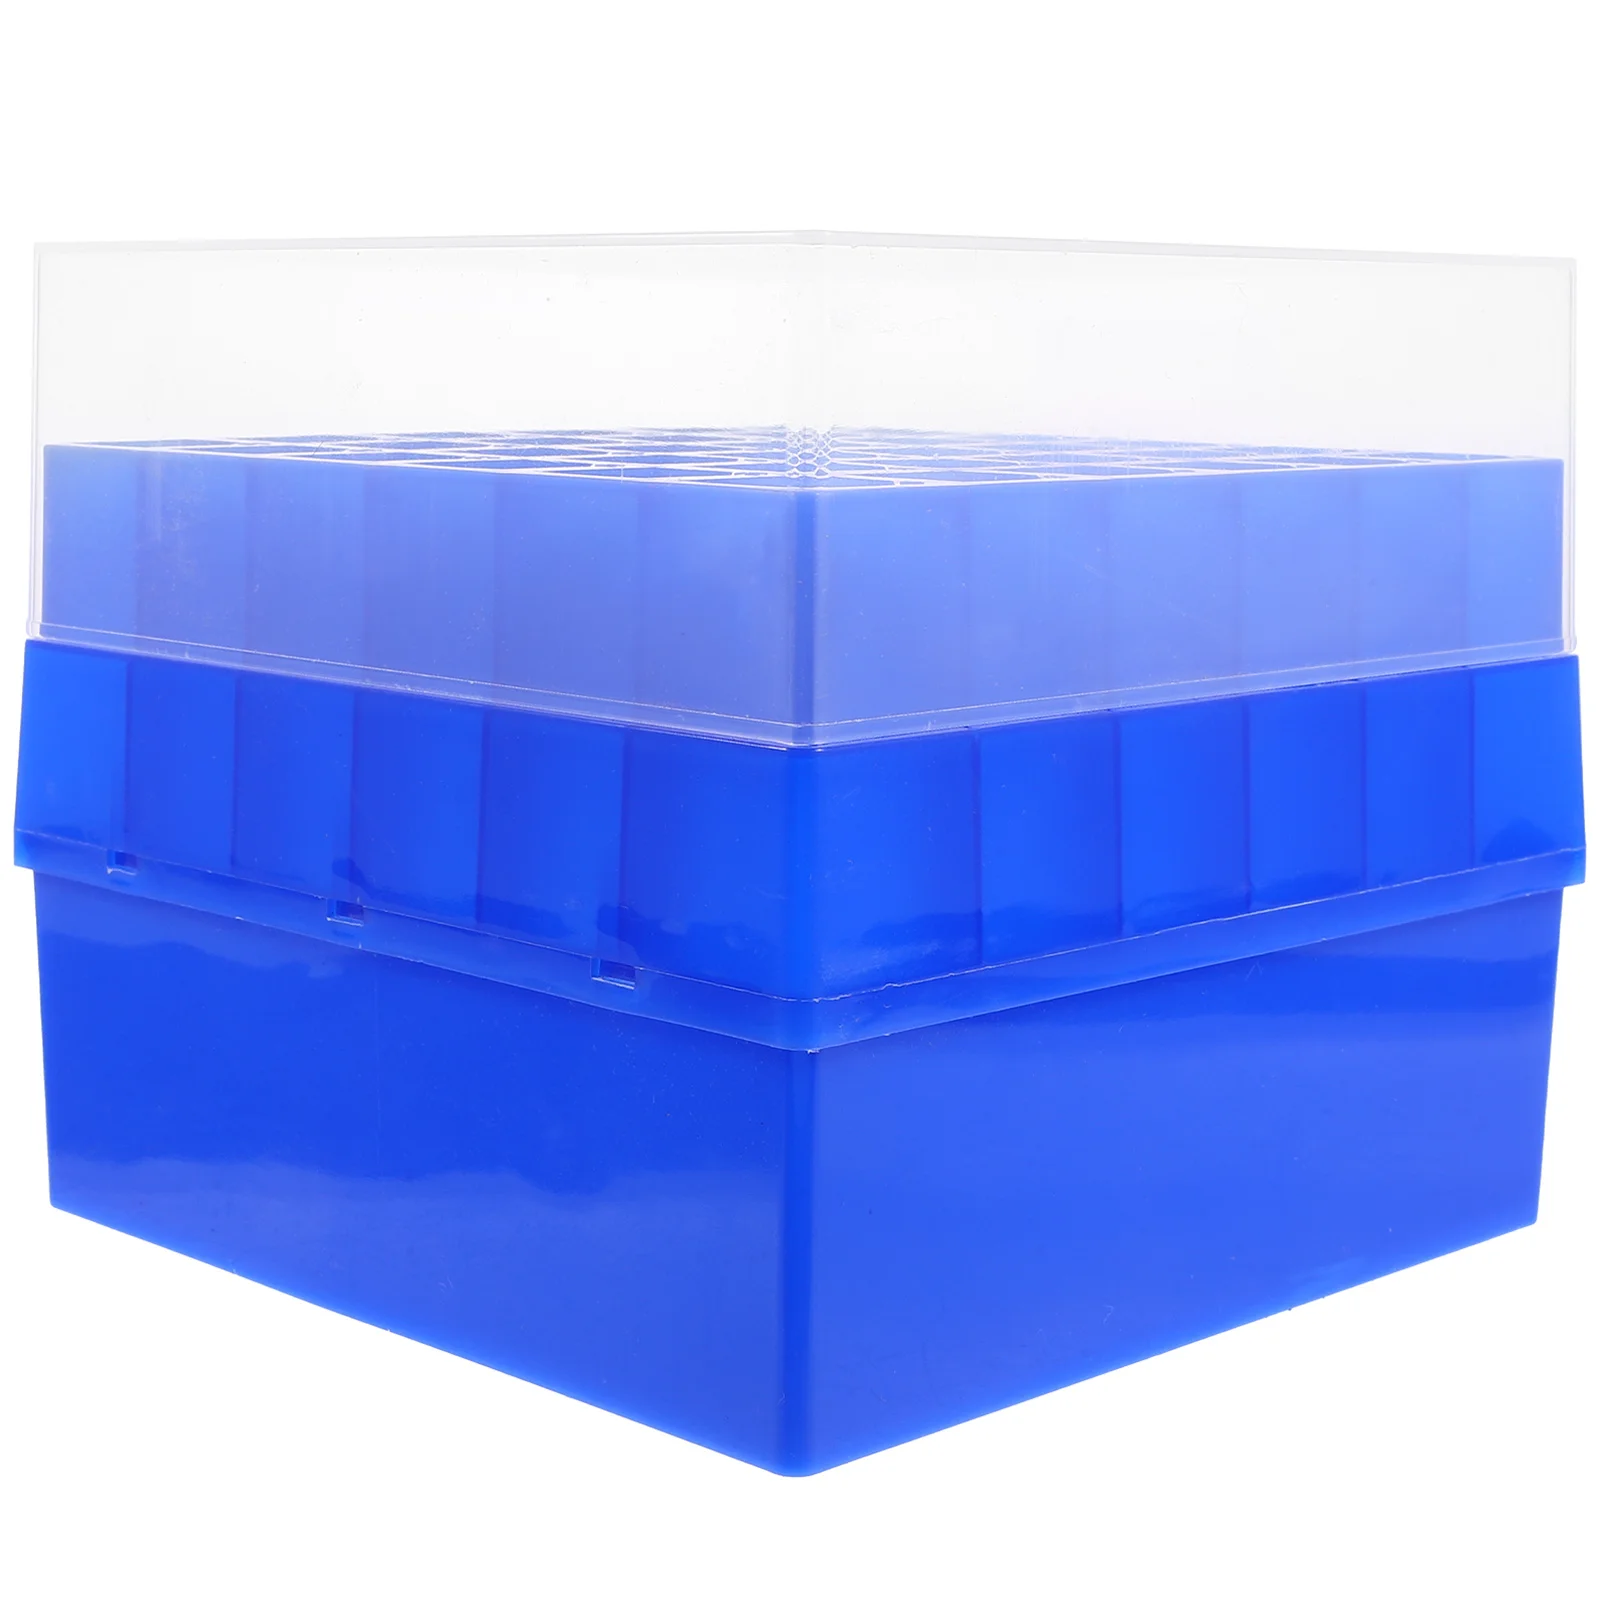 Tsentrifuugiklaasi Sügavkülmik Box Test Omanik Pudel Juhul Cryobox Torud, Karbid Plastikust Konteiner Labor - 2